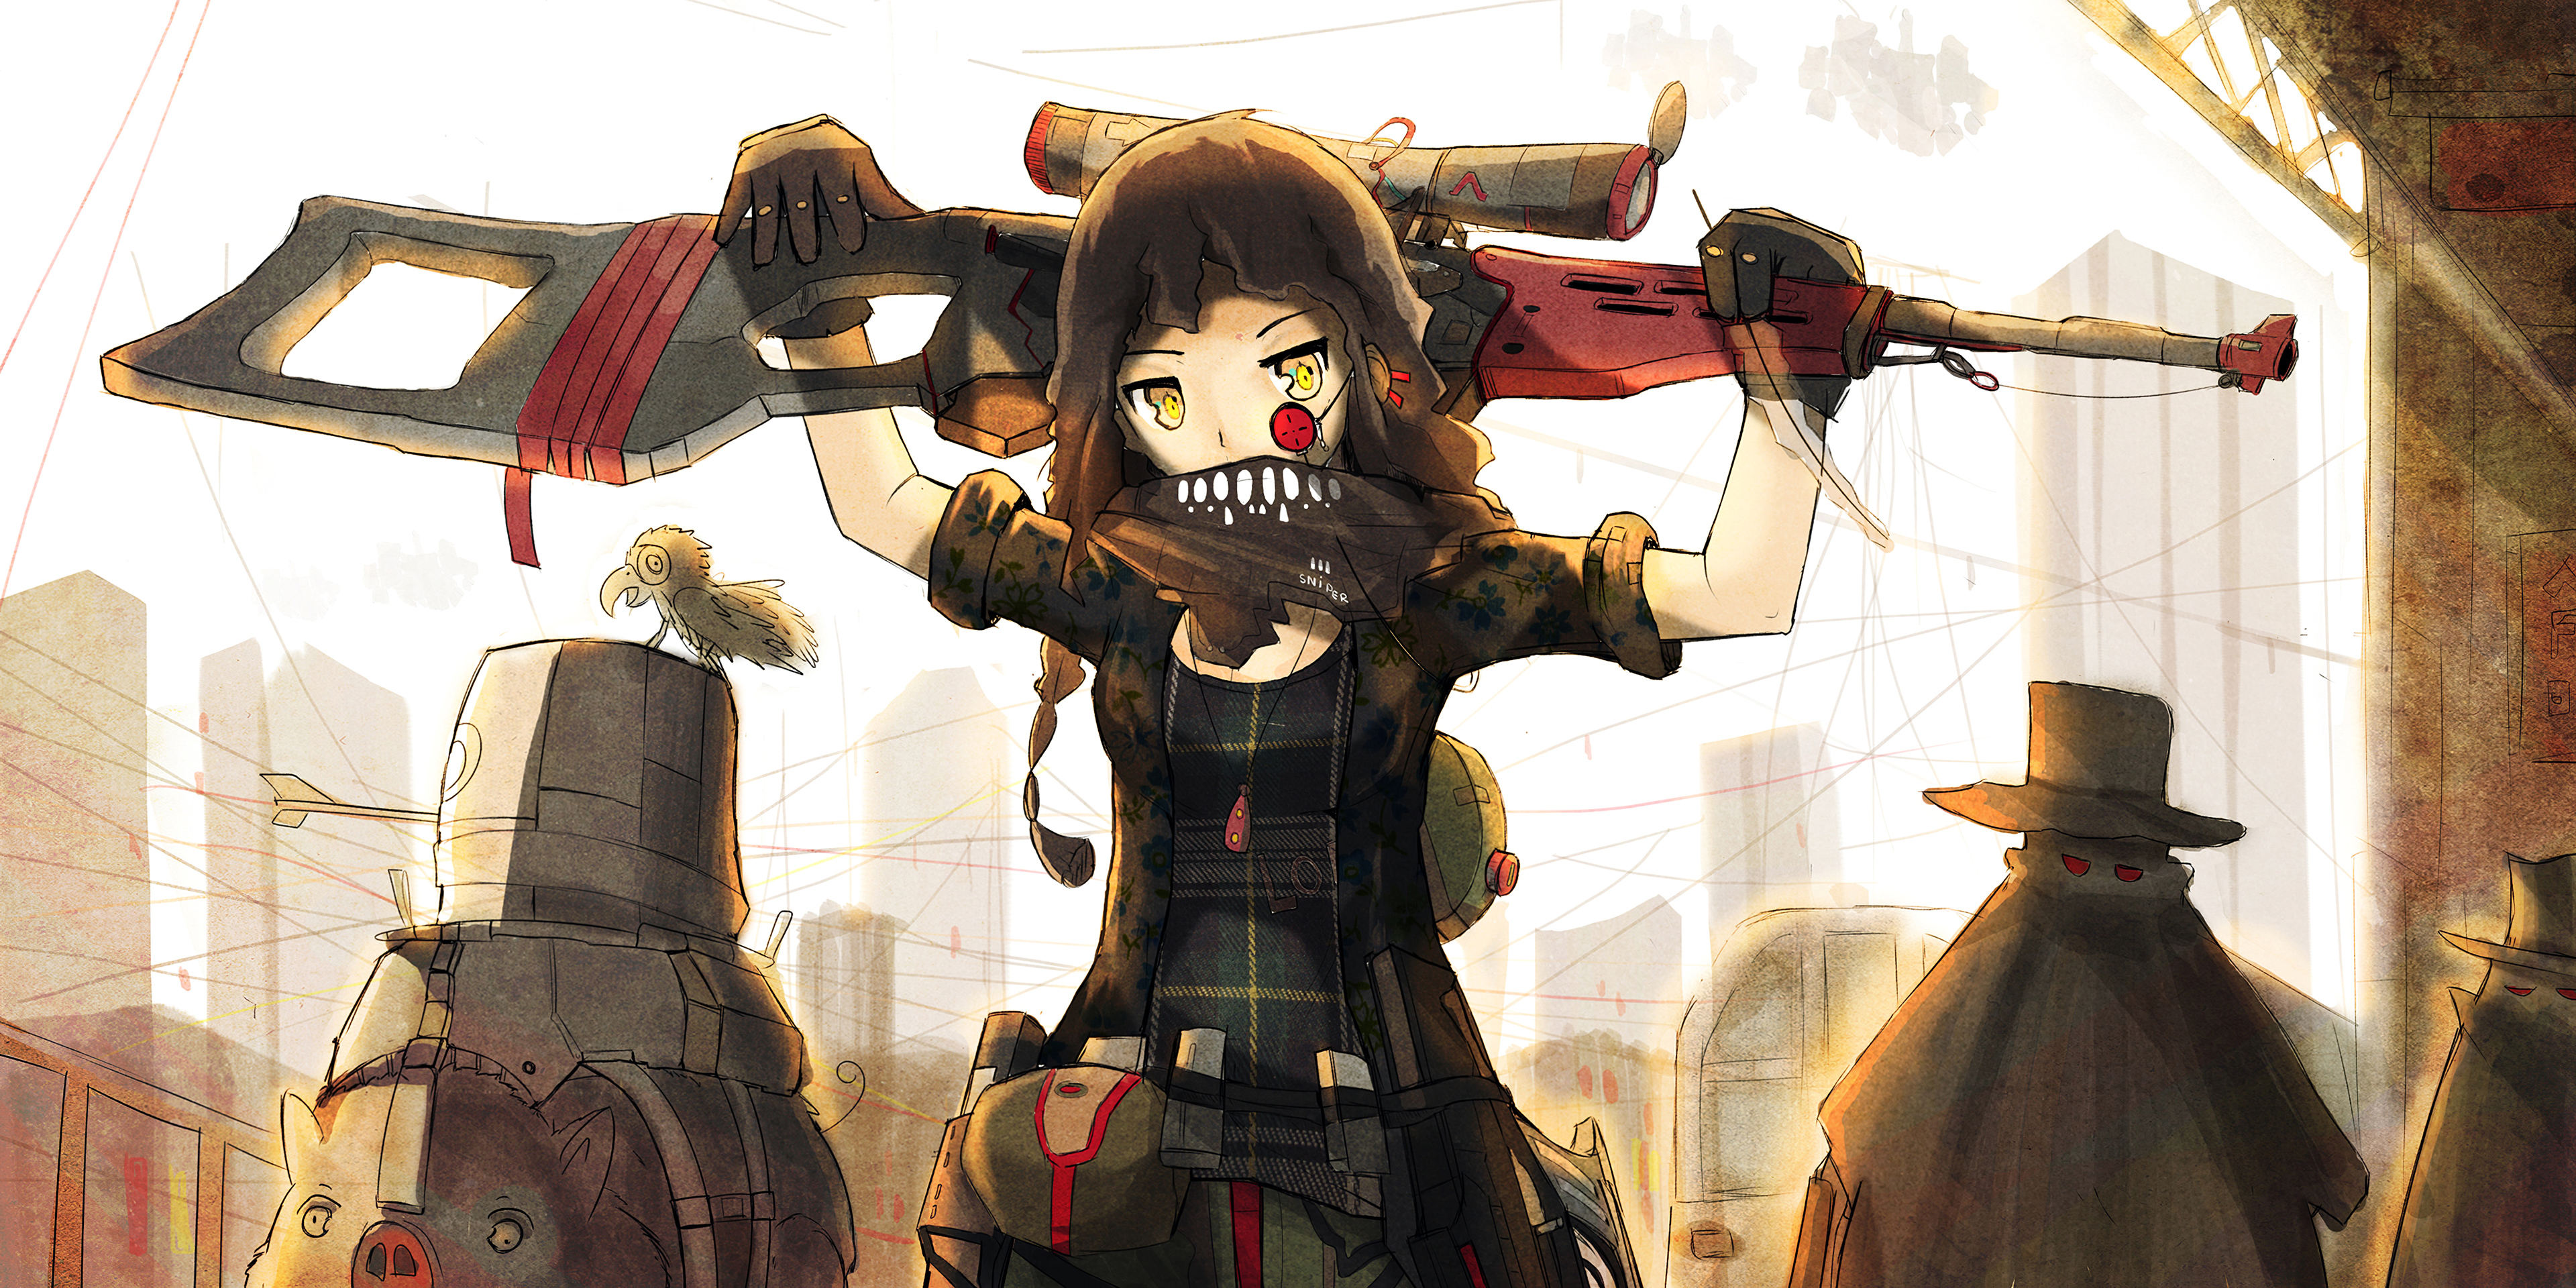 Anime Sniper Girl Wallpapers